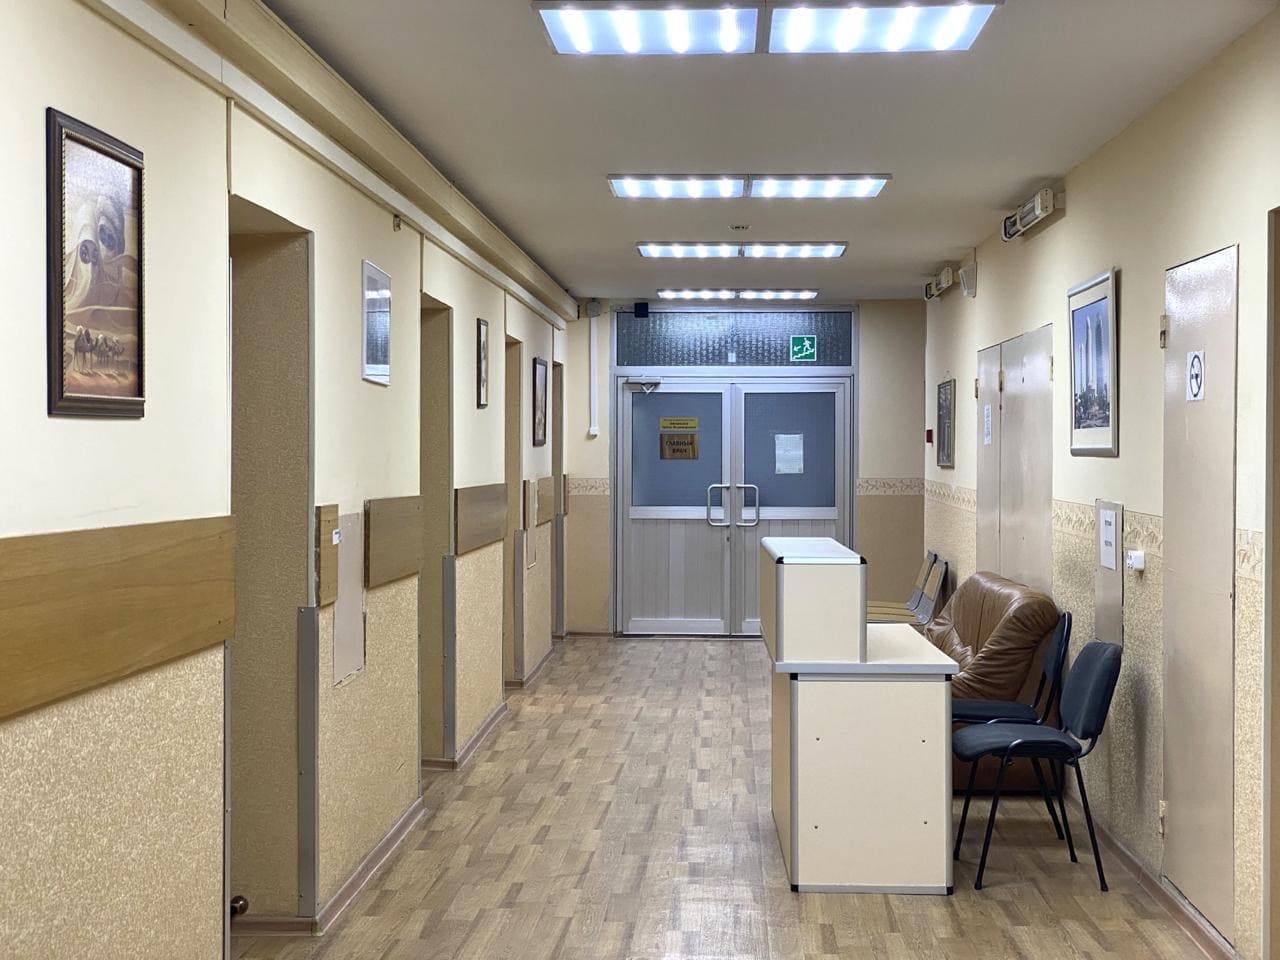 Этапы лечения в платной частной наркологической клинике Майпсихелс - Mypsyhealth в Москве